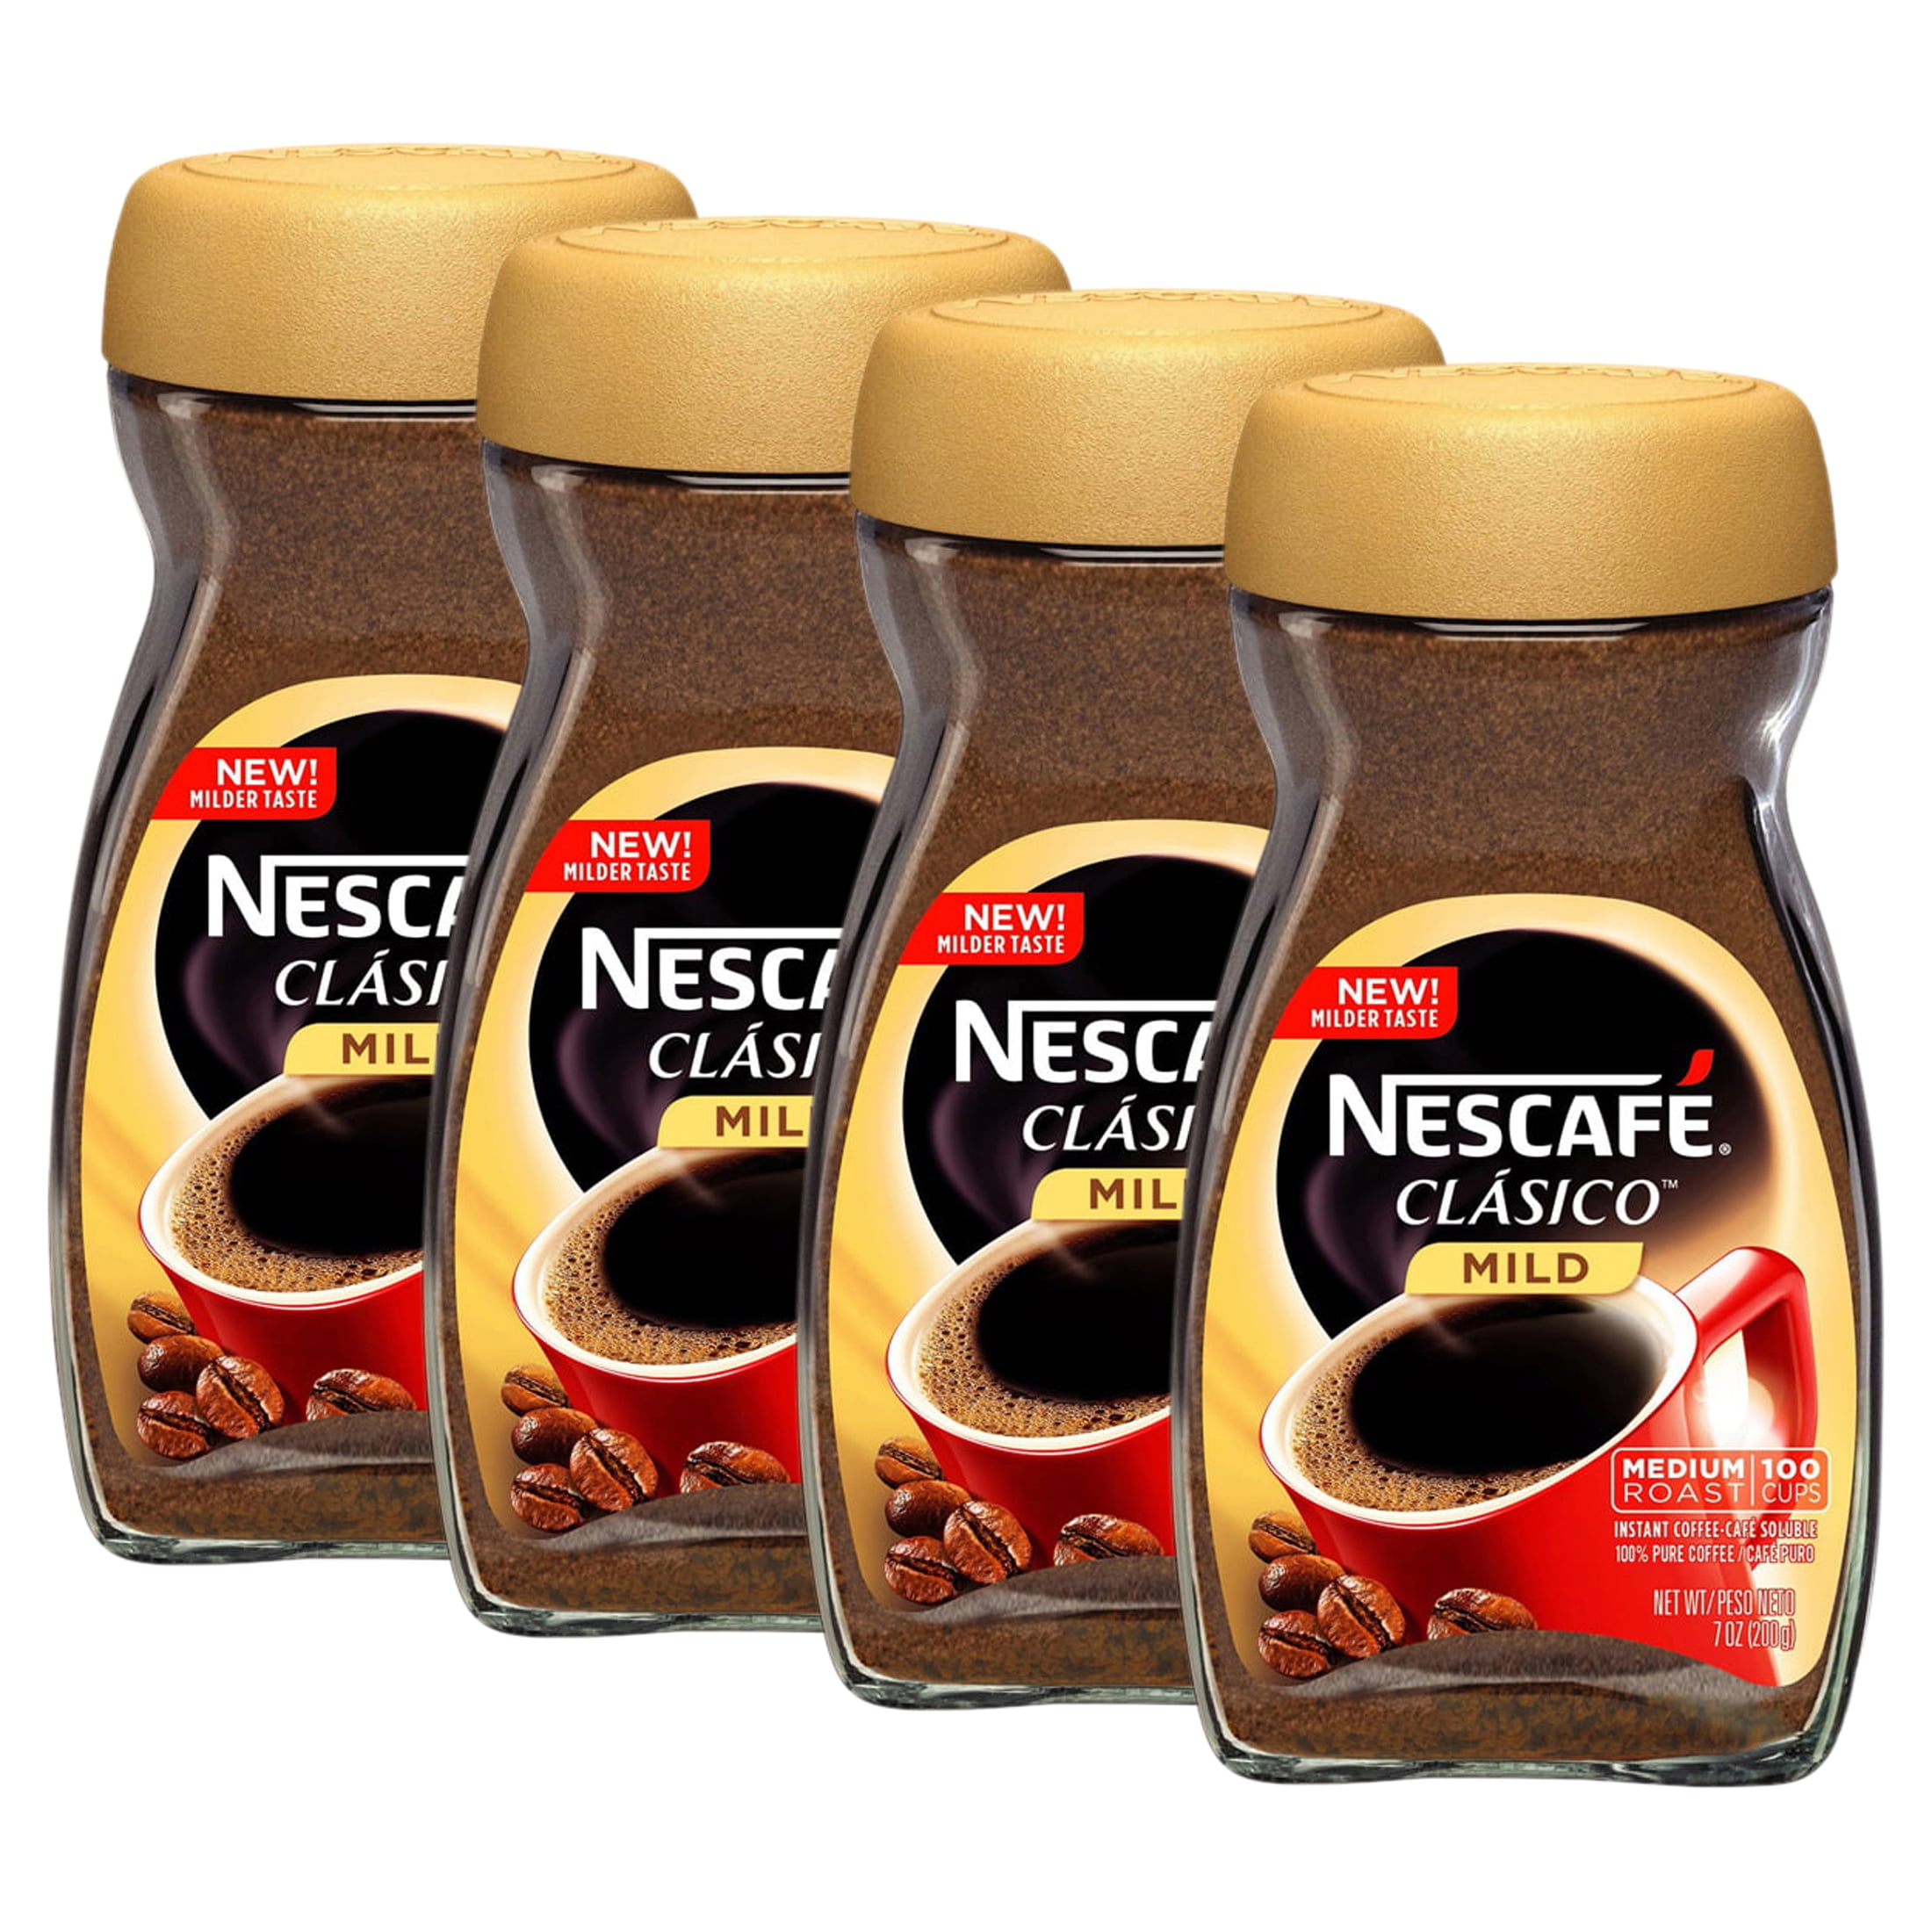 Nescafé® Alegria Máquina café soluble